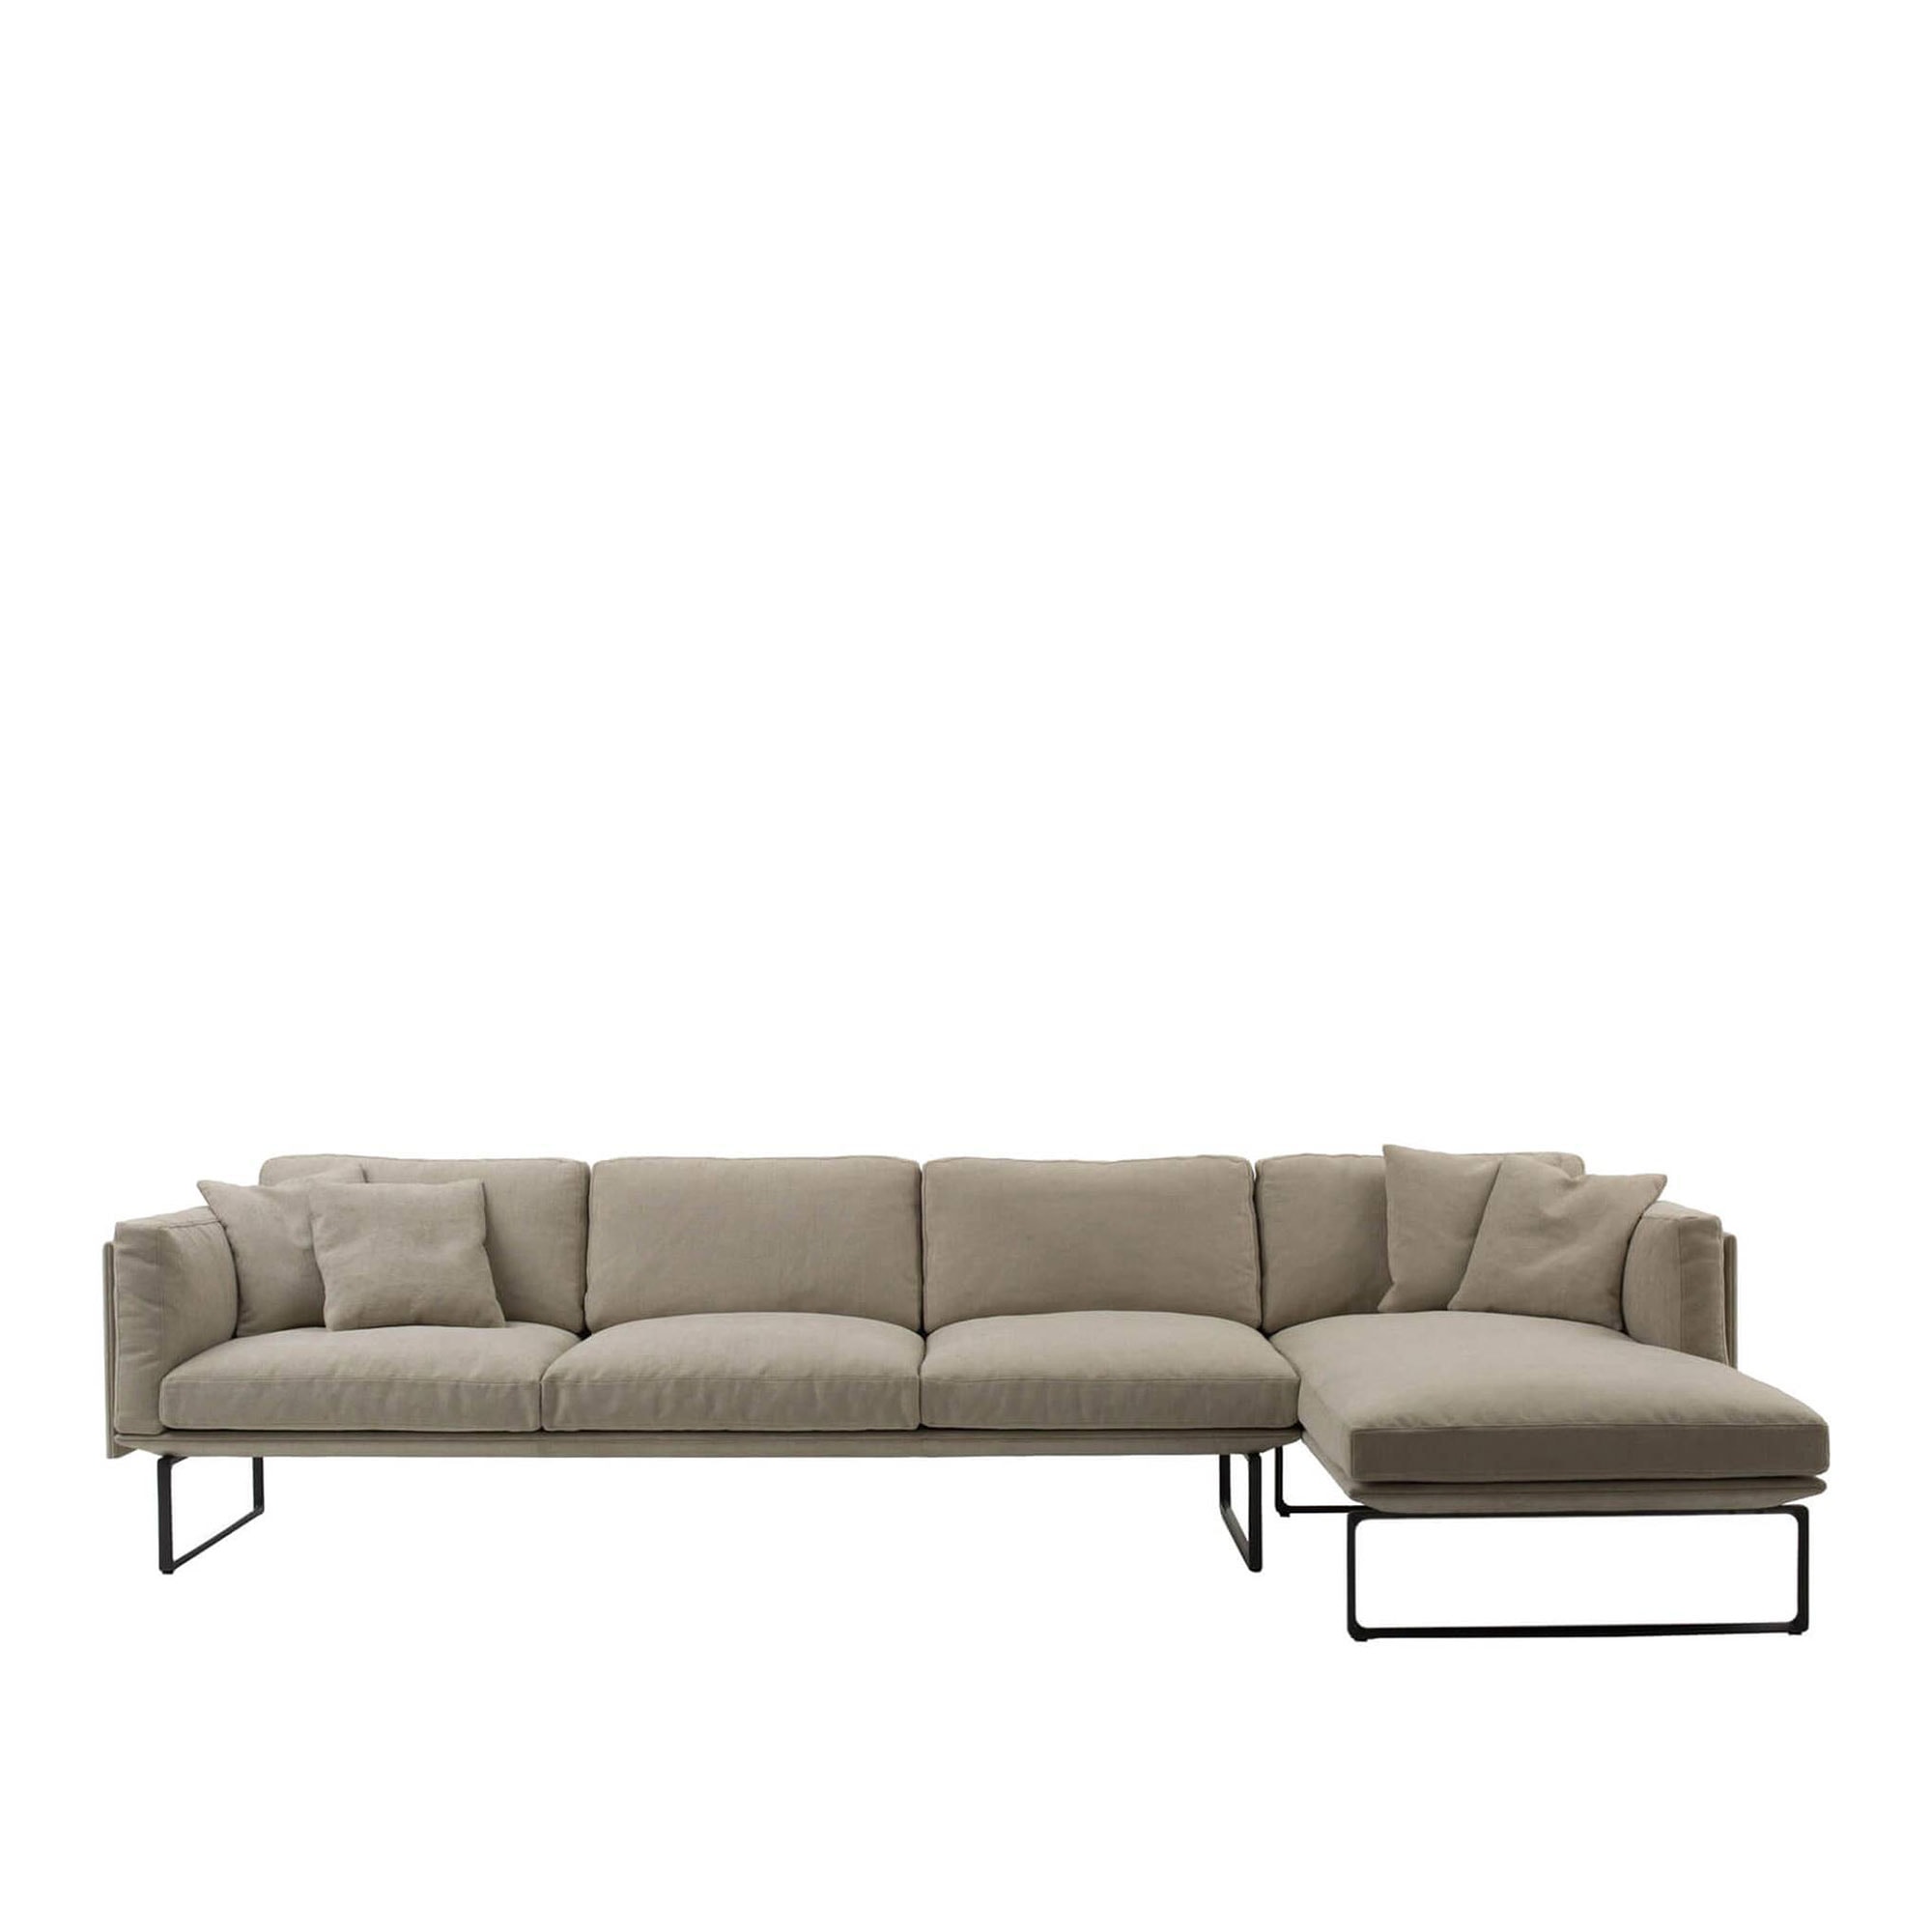 202 8 Sofa From Cassina No Ga Com